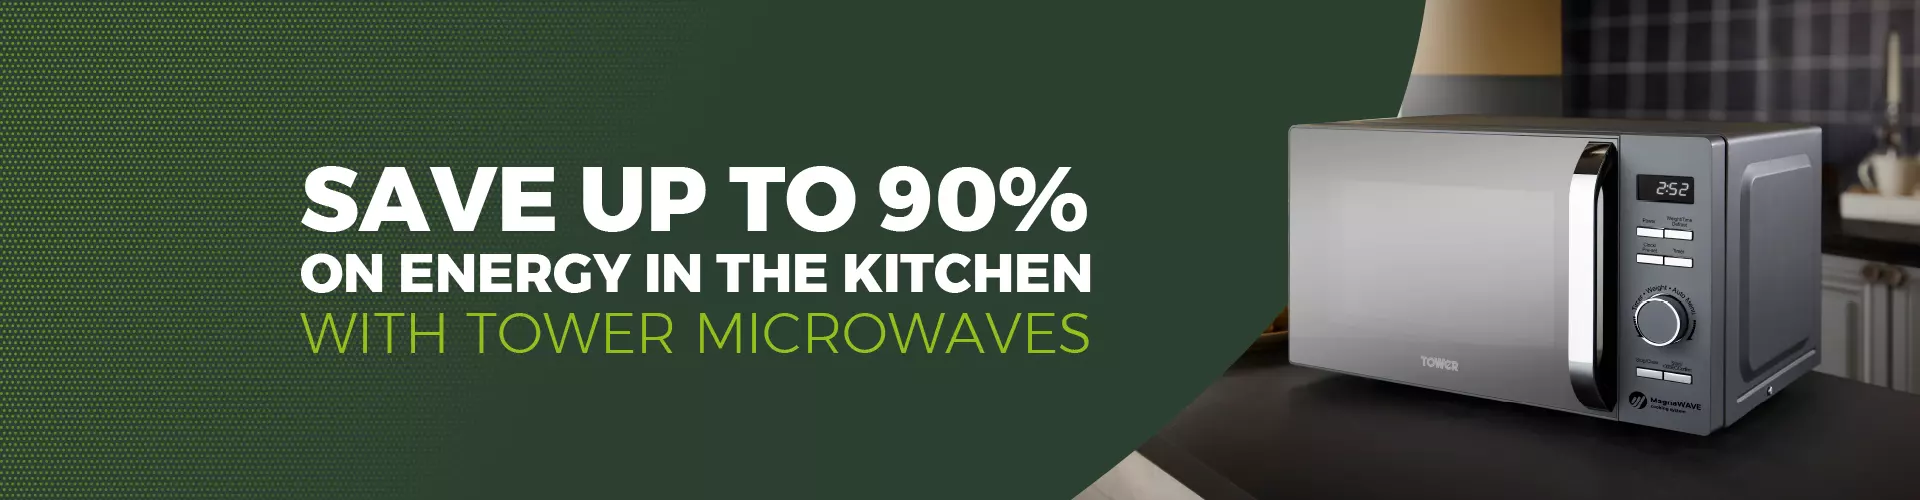 save-energy-new-Microwaves-hero-banner.jpg